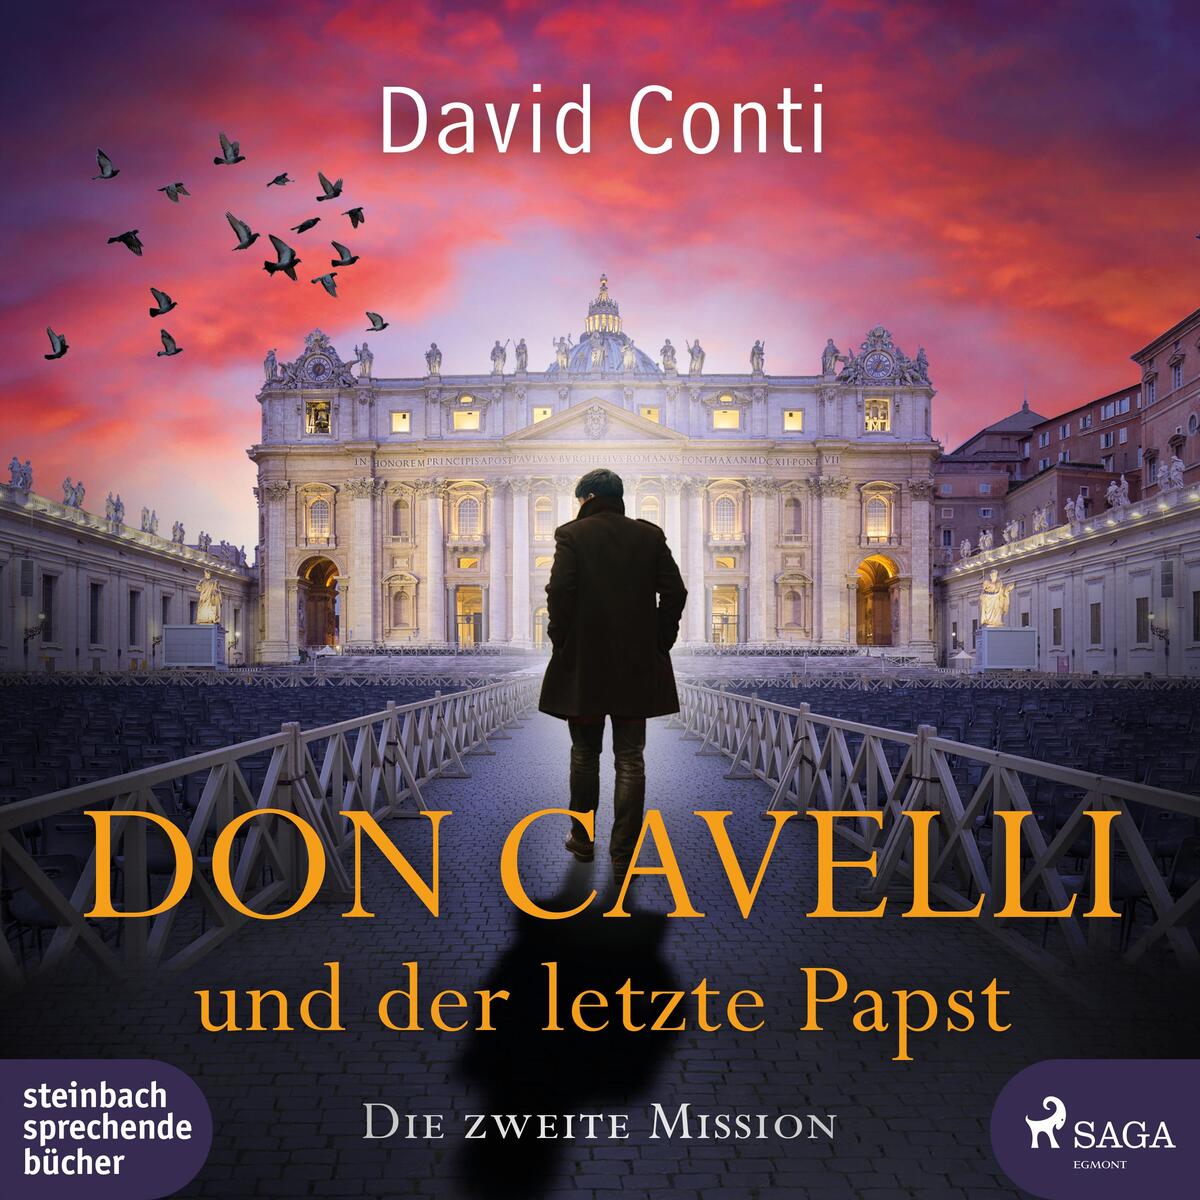 Don Cavelli und der letzte Papst von Steinbach Sprechende